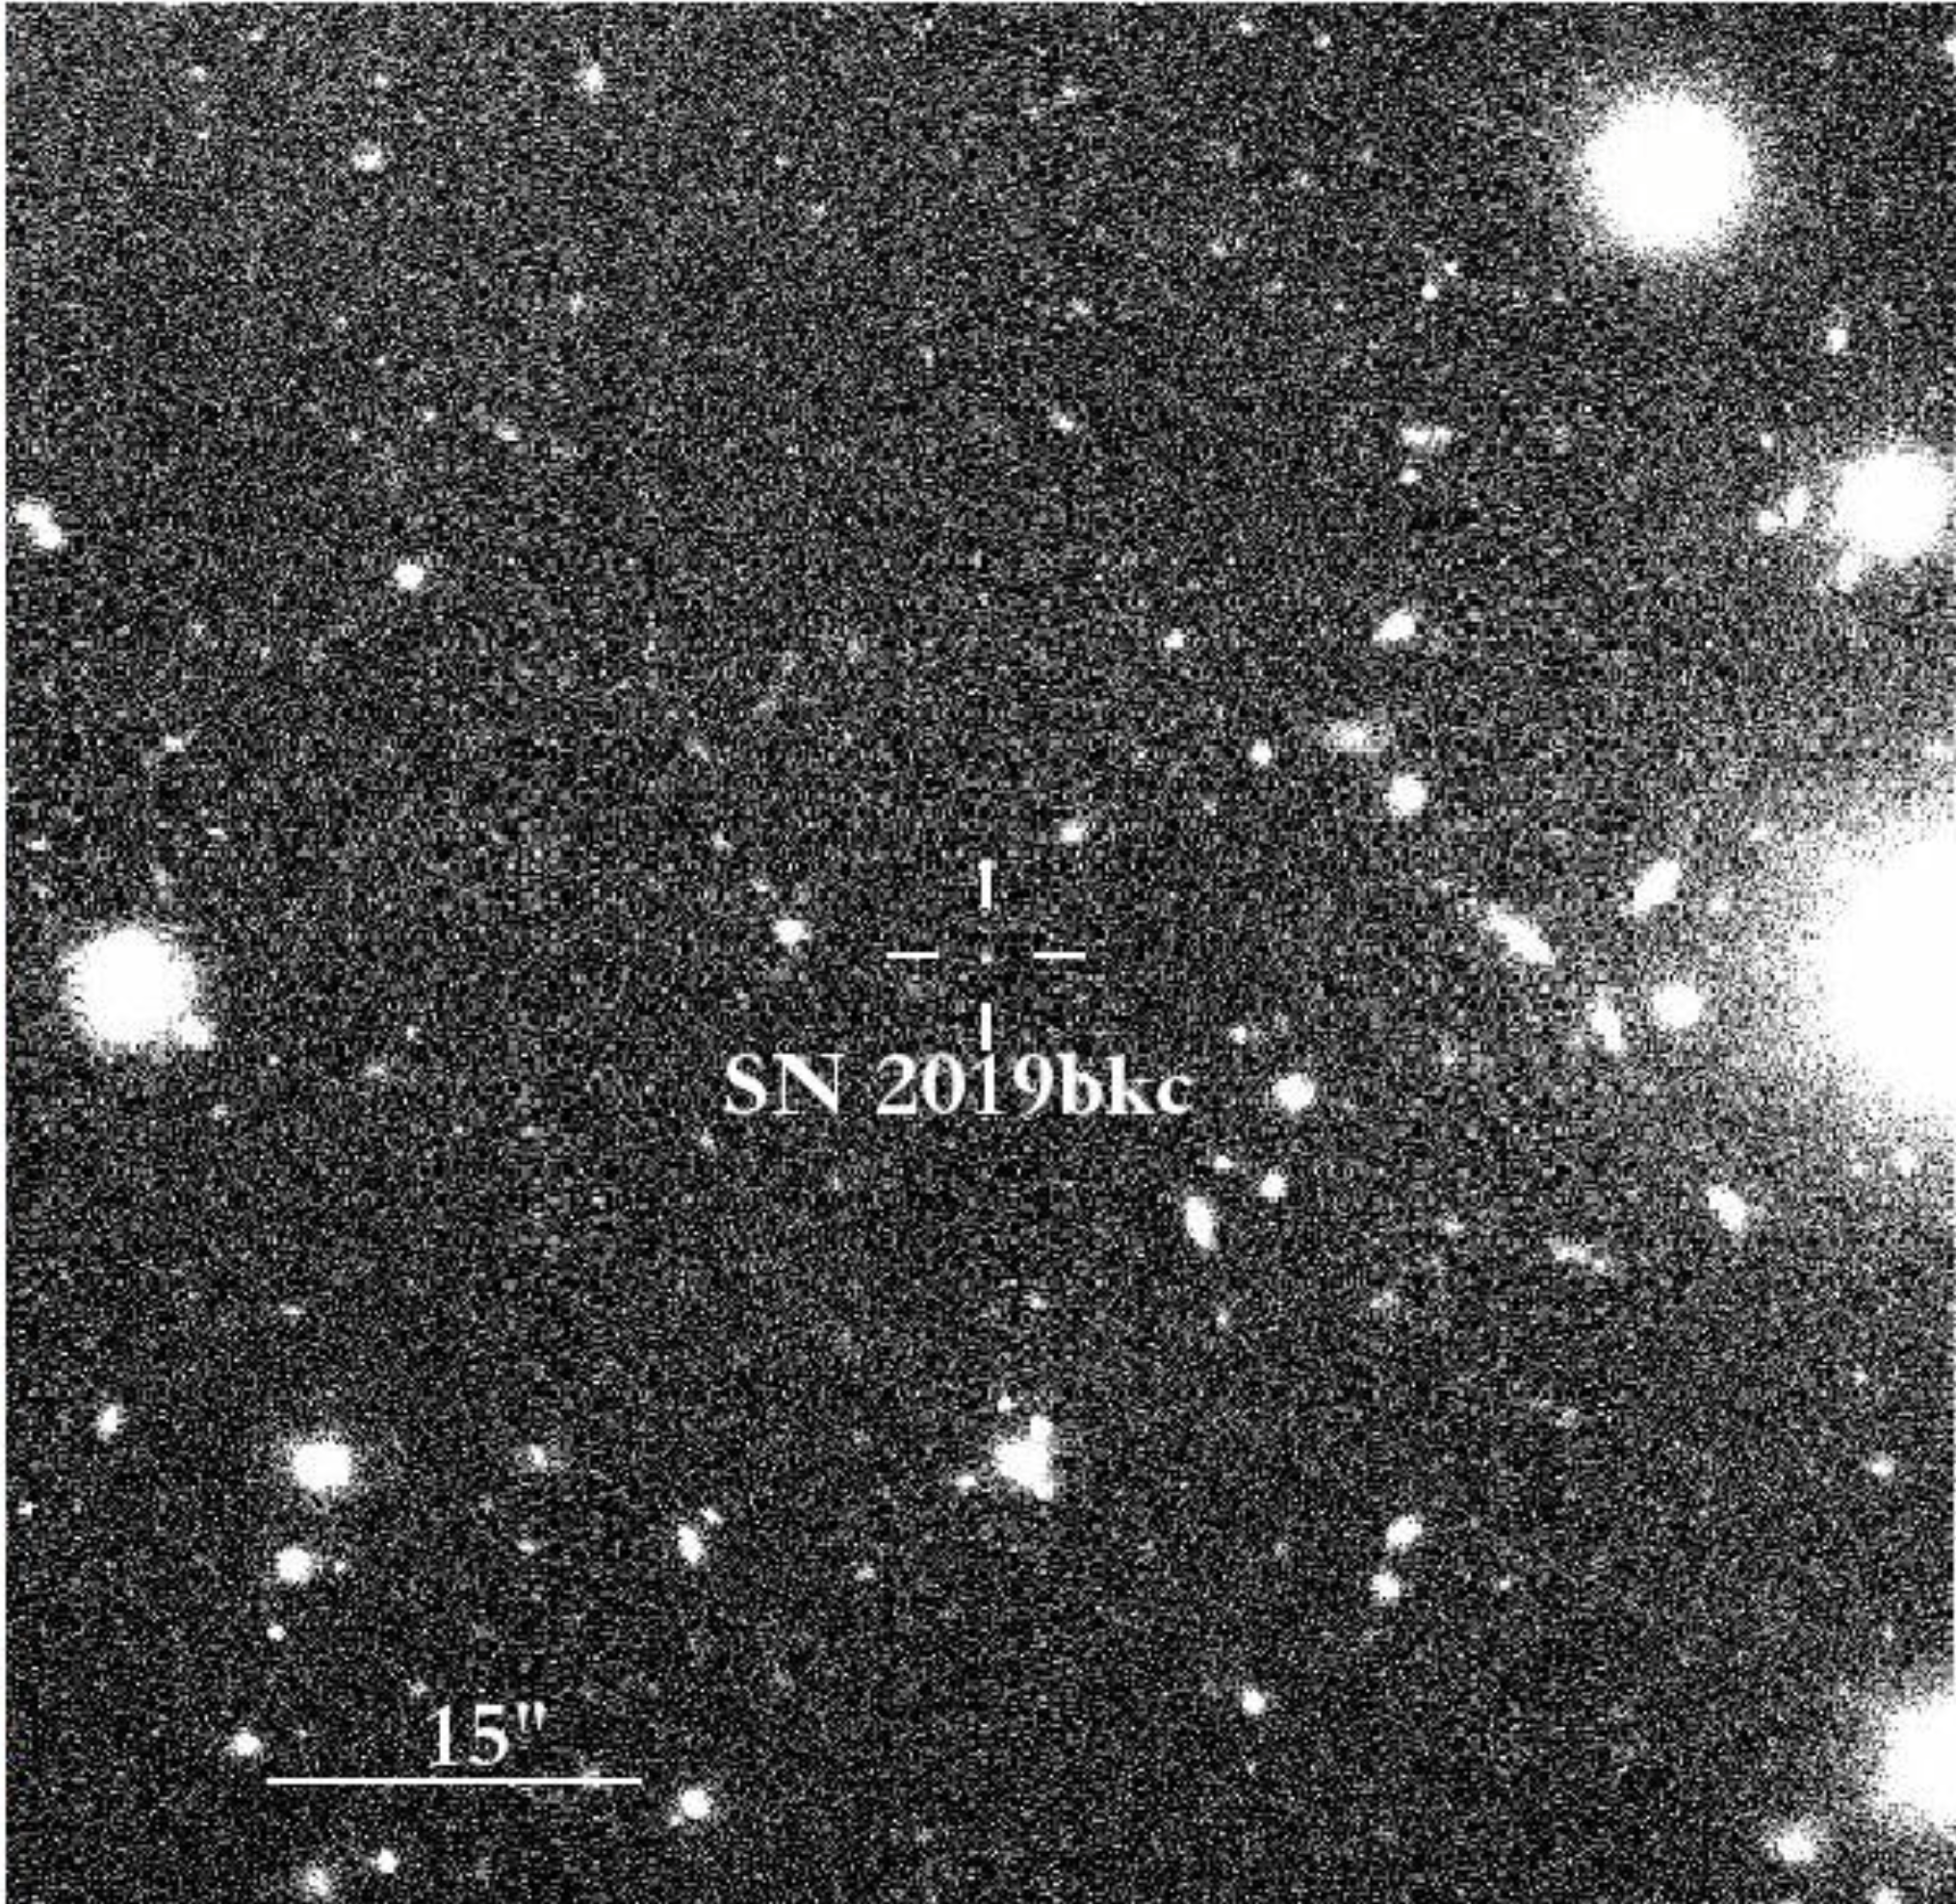 Supernova SN 2019bkc fanget med NOT teleskopet på La Palma. Foto fra artiklen.